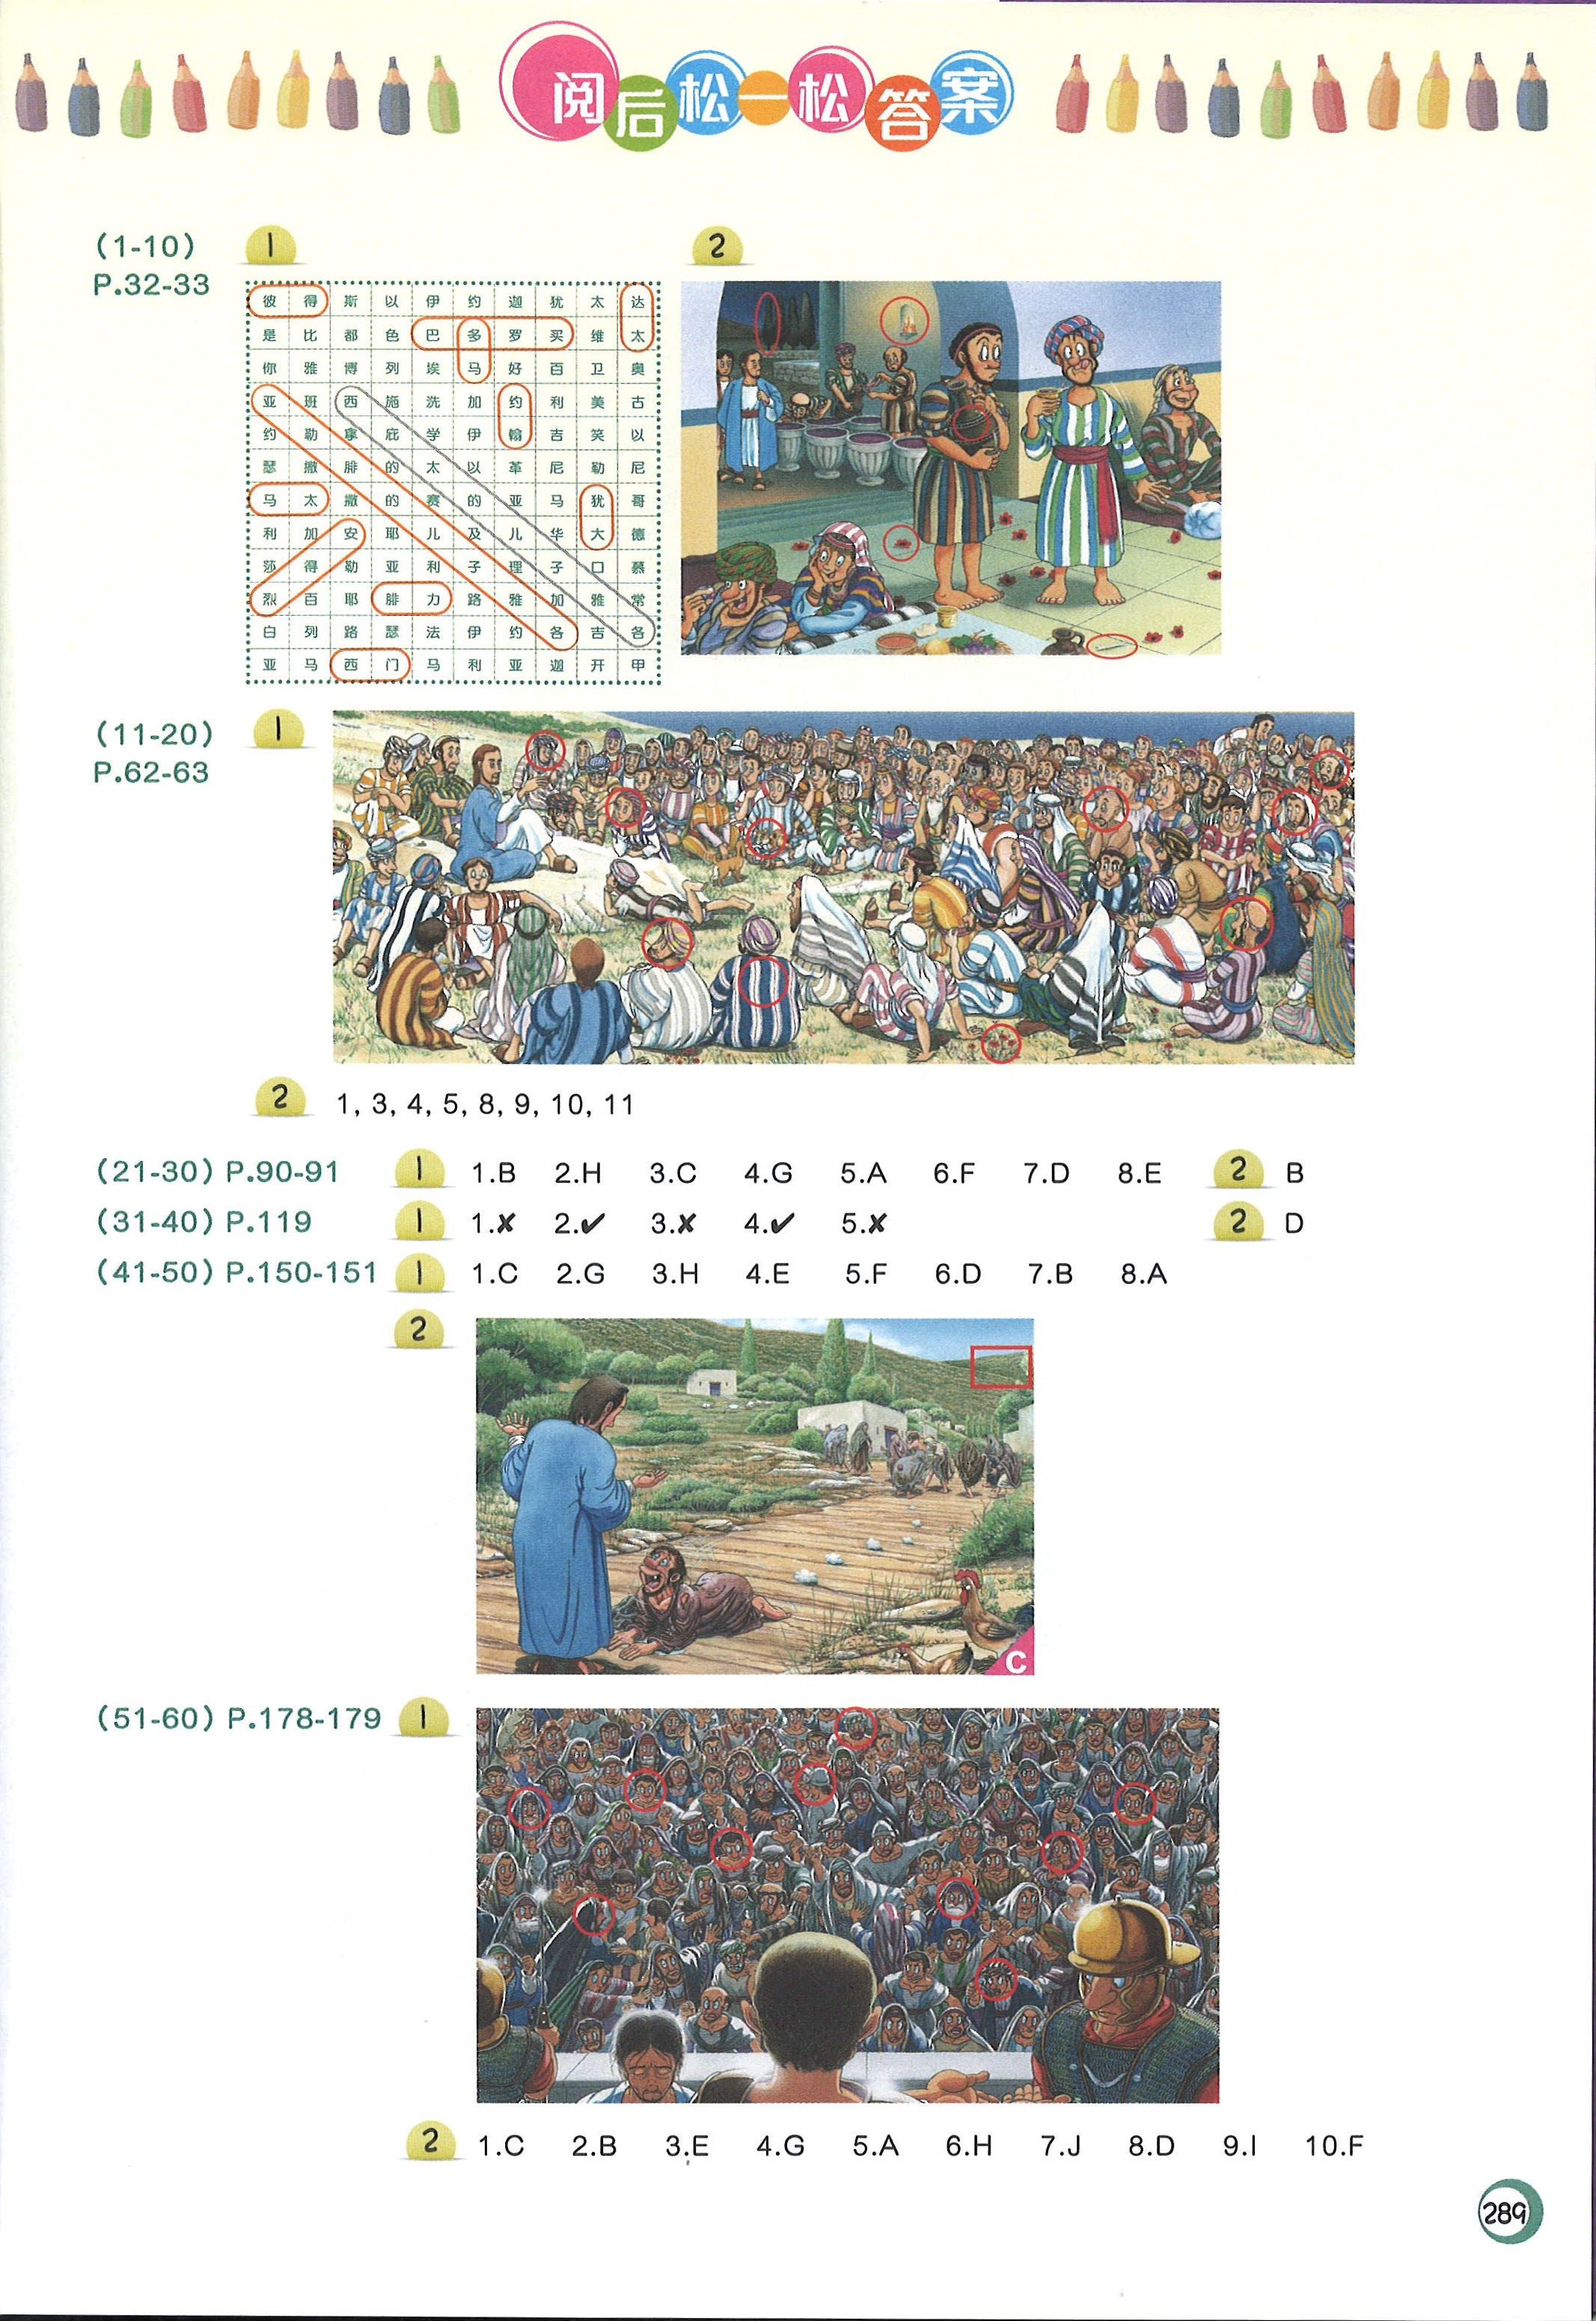 童悦圣经-新约选读100篇 [简] -- Children's Illustrated Bible - 100 NT Stories